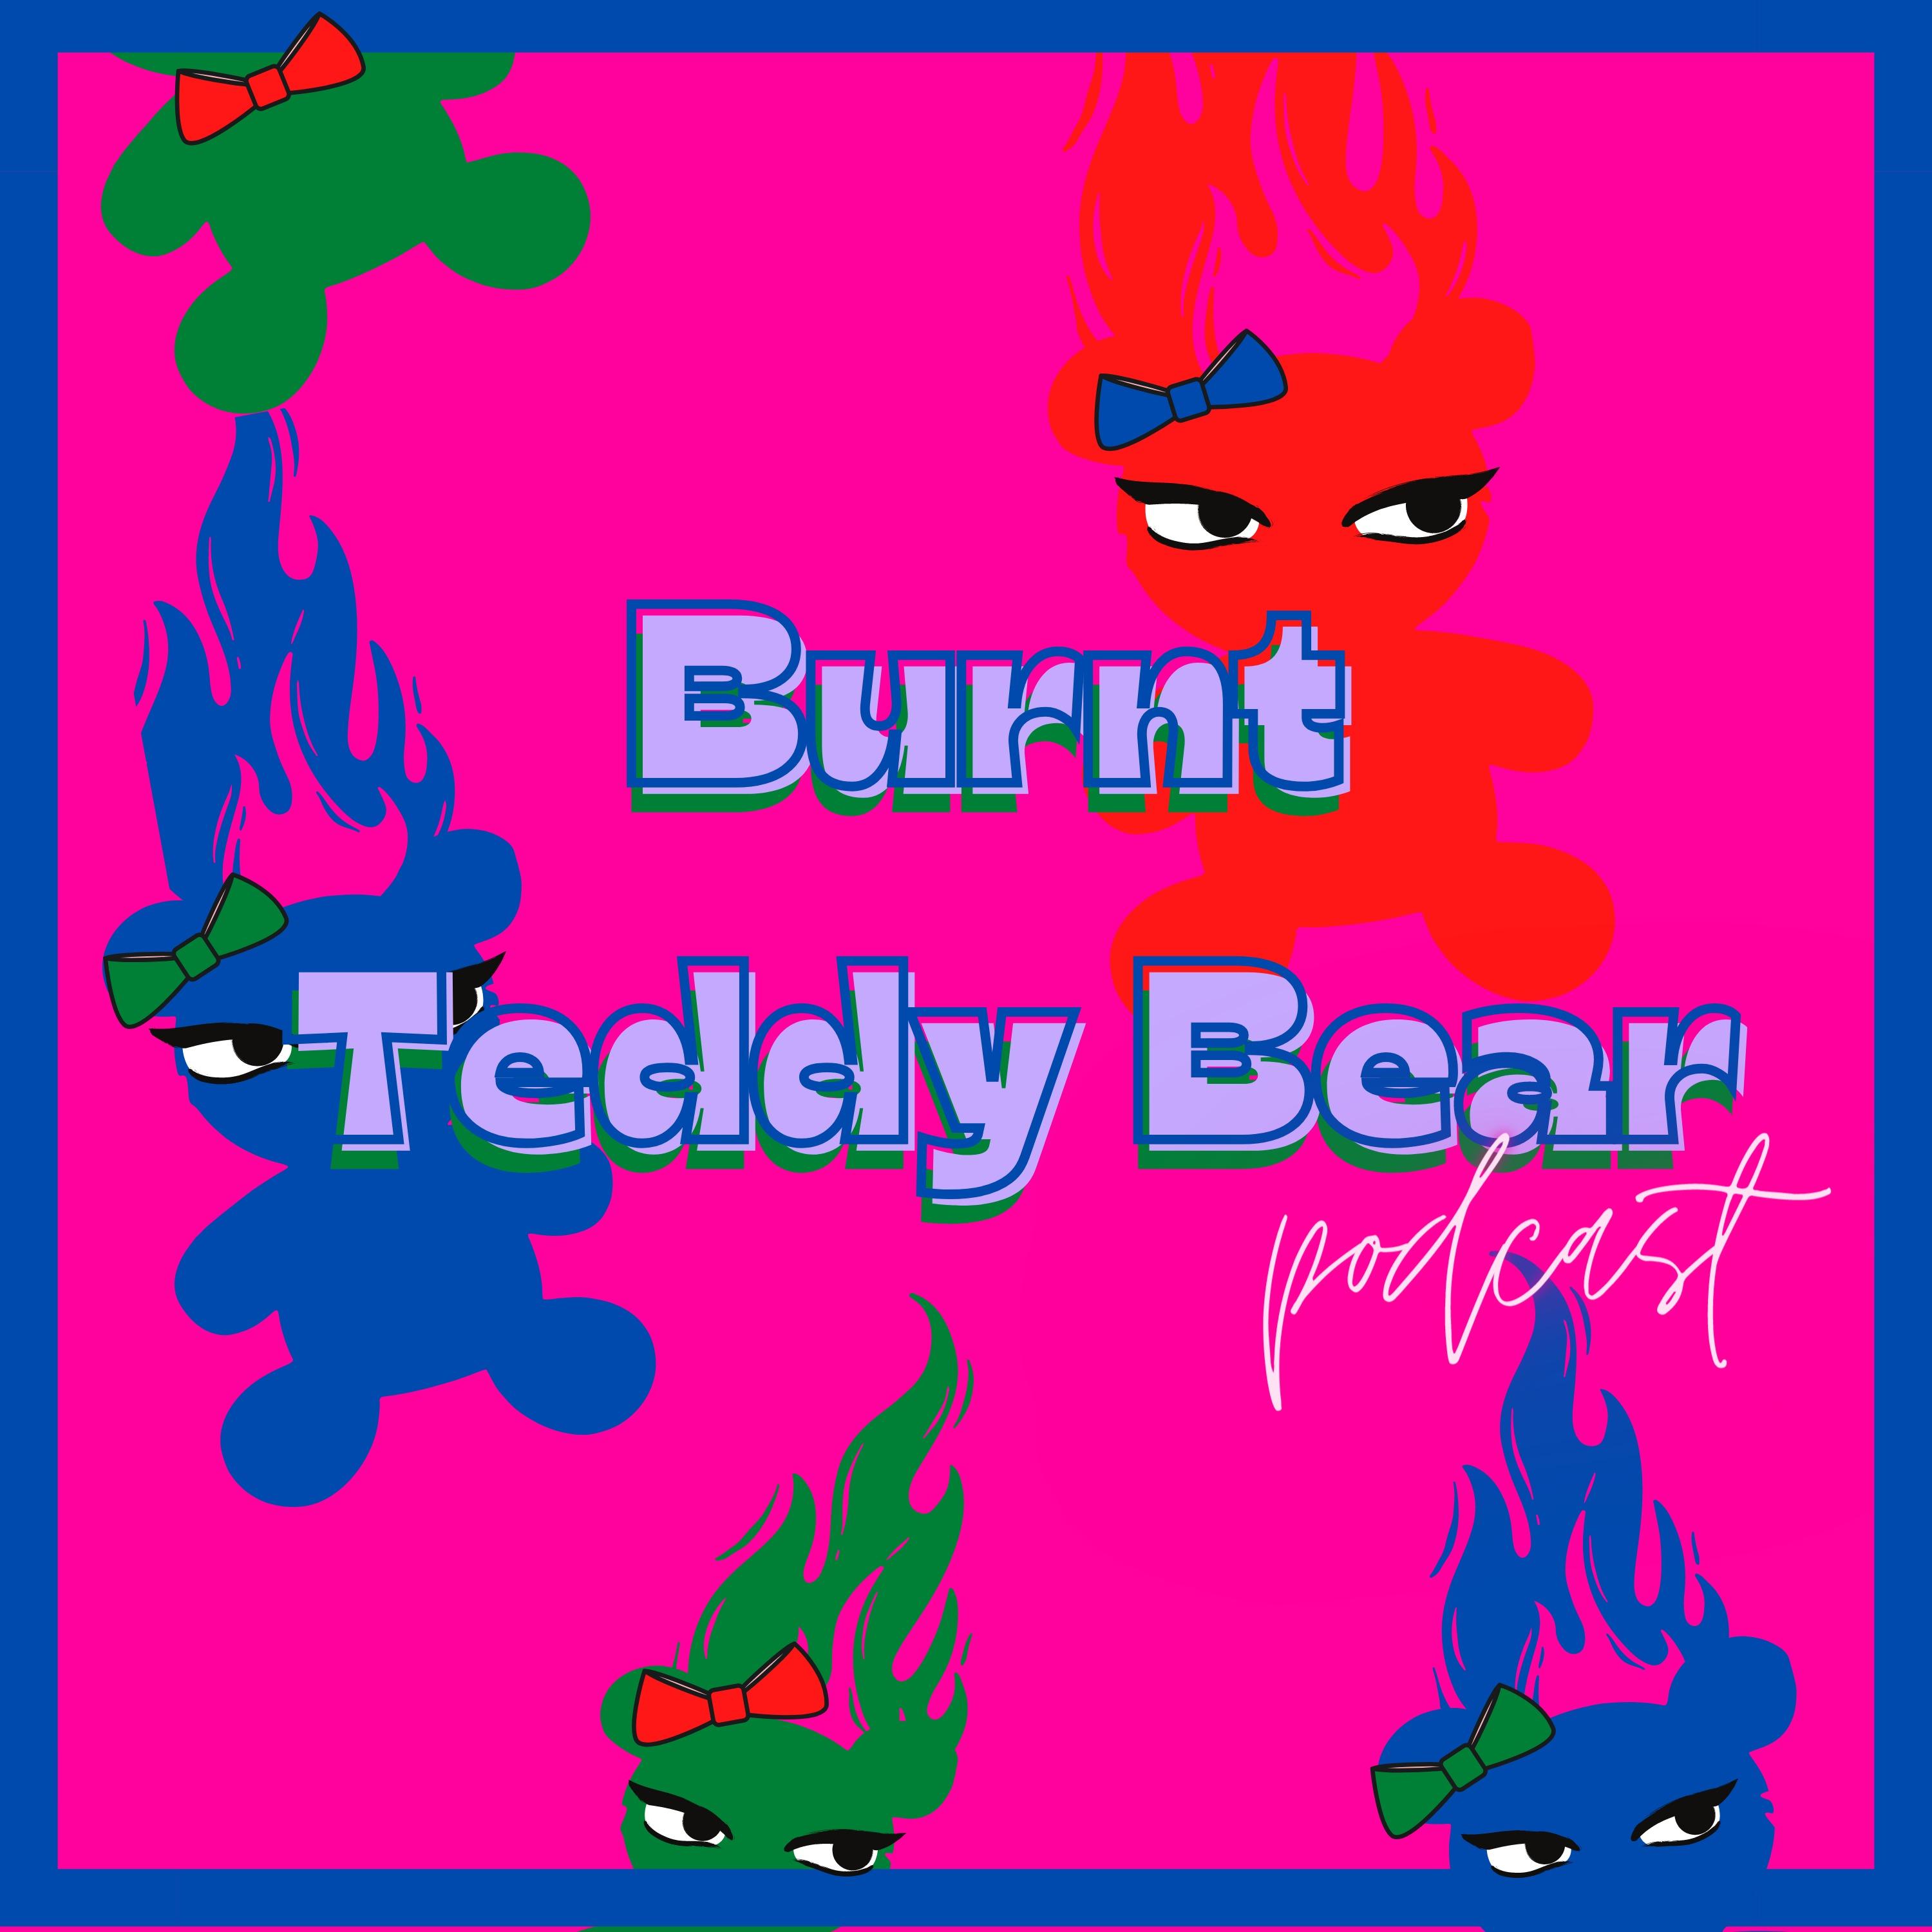 The Burnt Teddy Bear Podcast